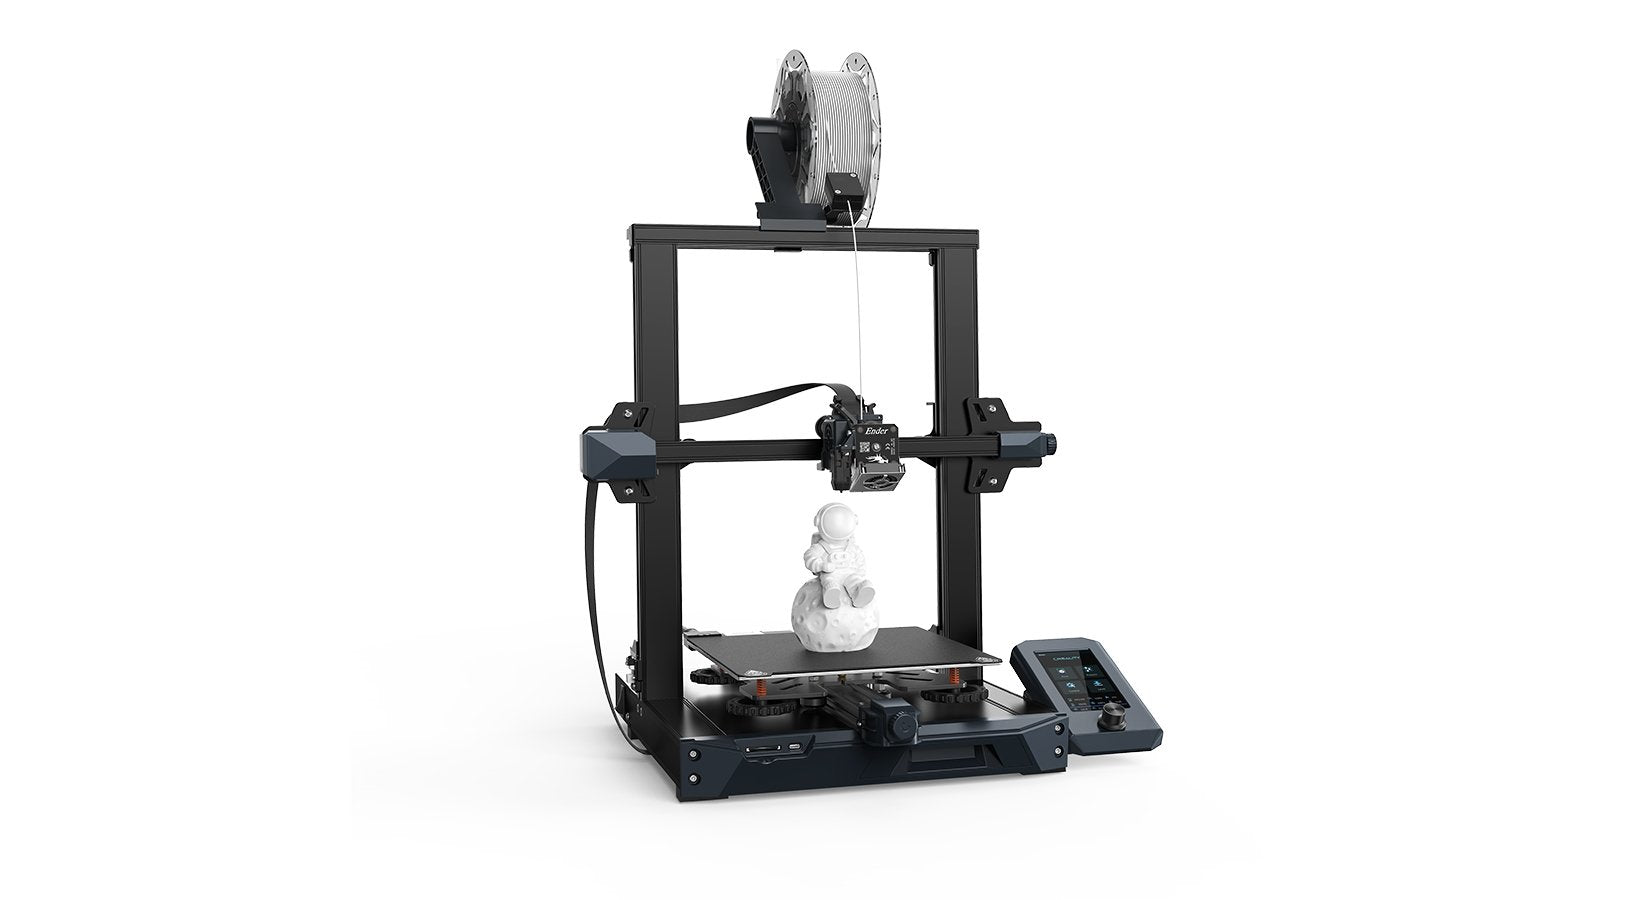 Imprimante 3D Creality Ender 3 S1 Plus